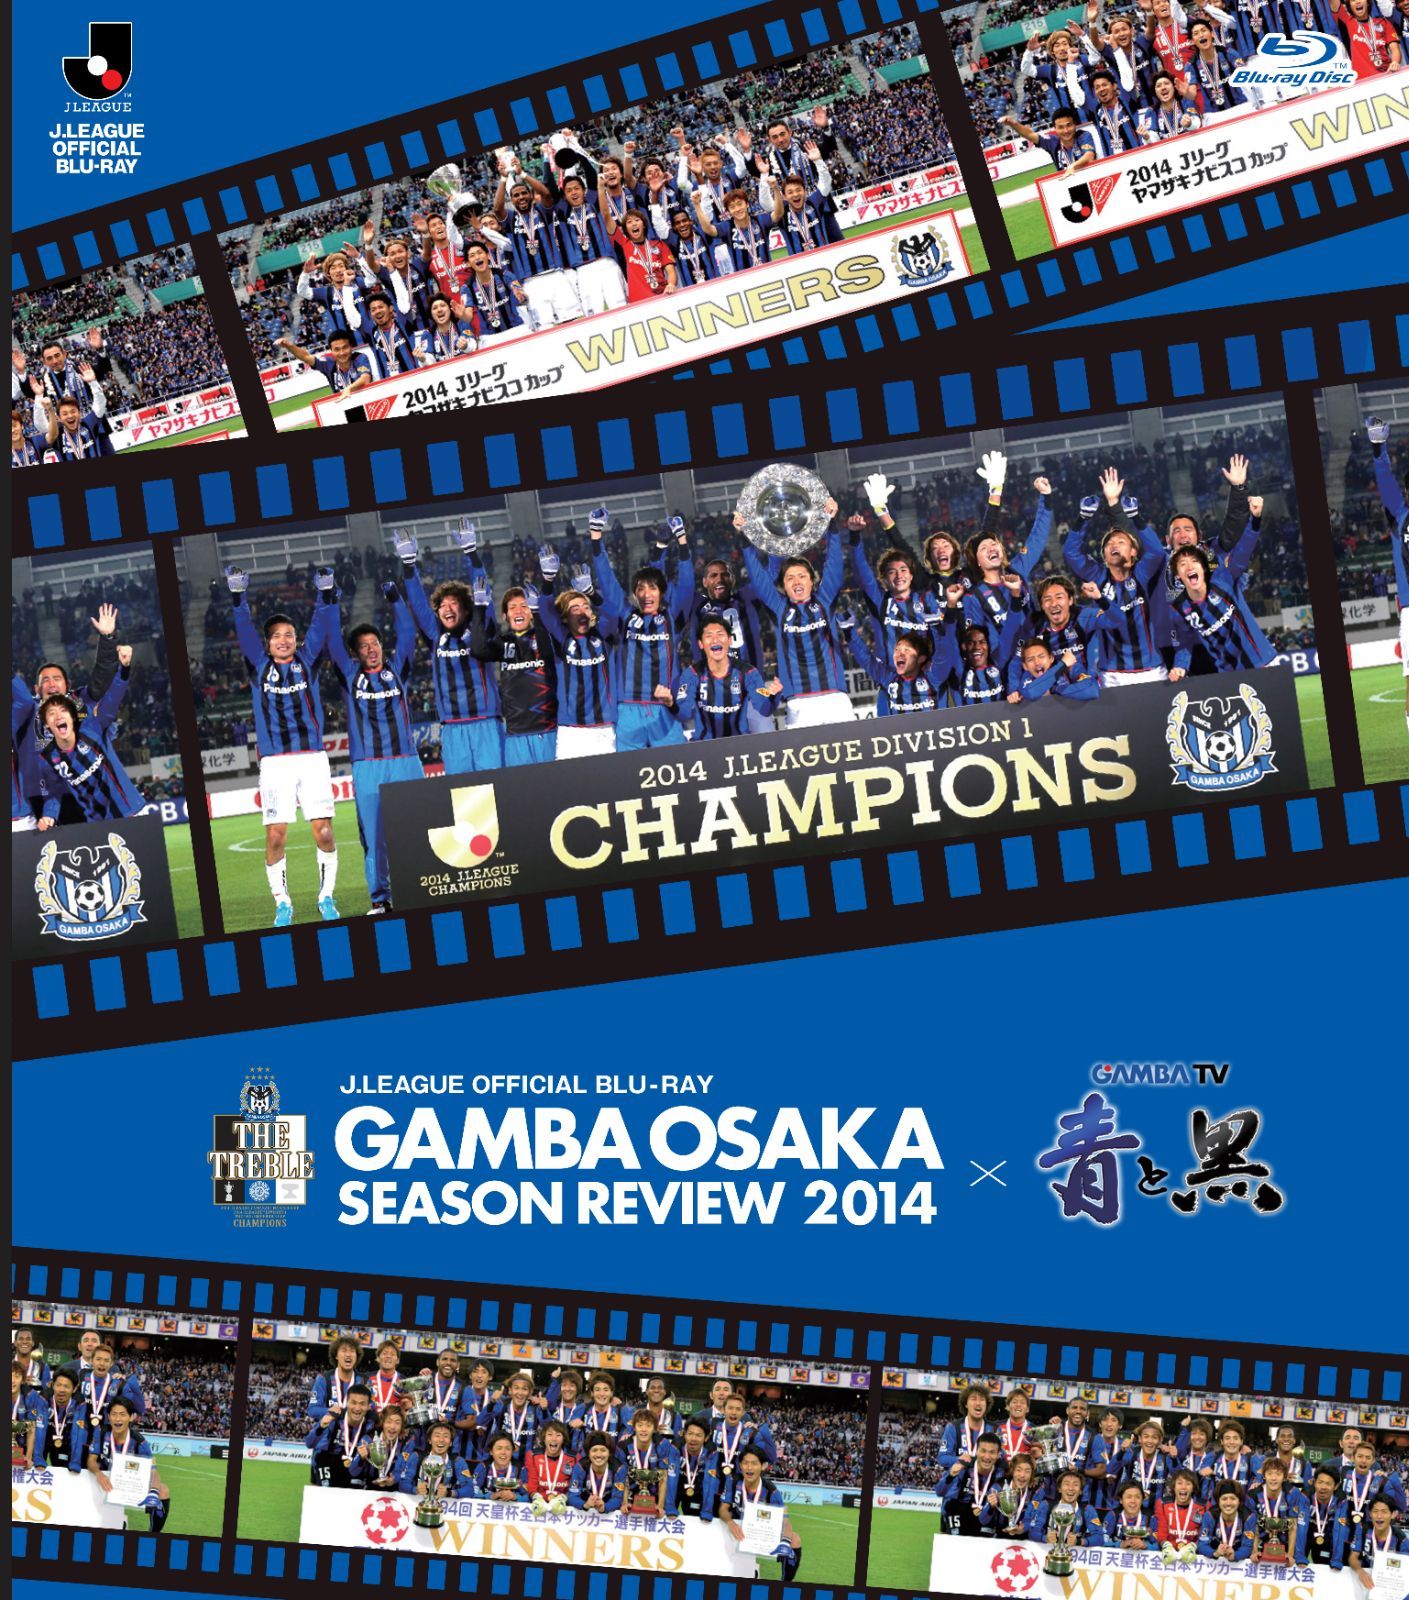 ガンバ大阪シーズンレビュー2014-2016 3シーズンセット【Blu-ray